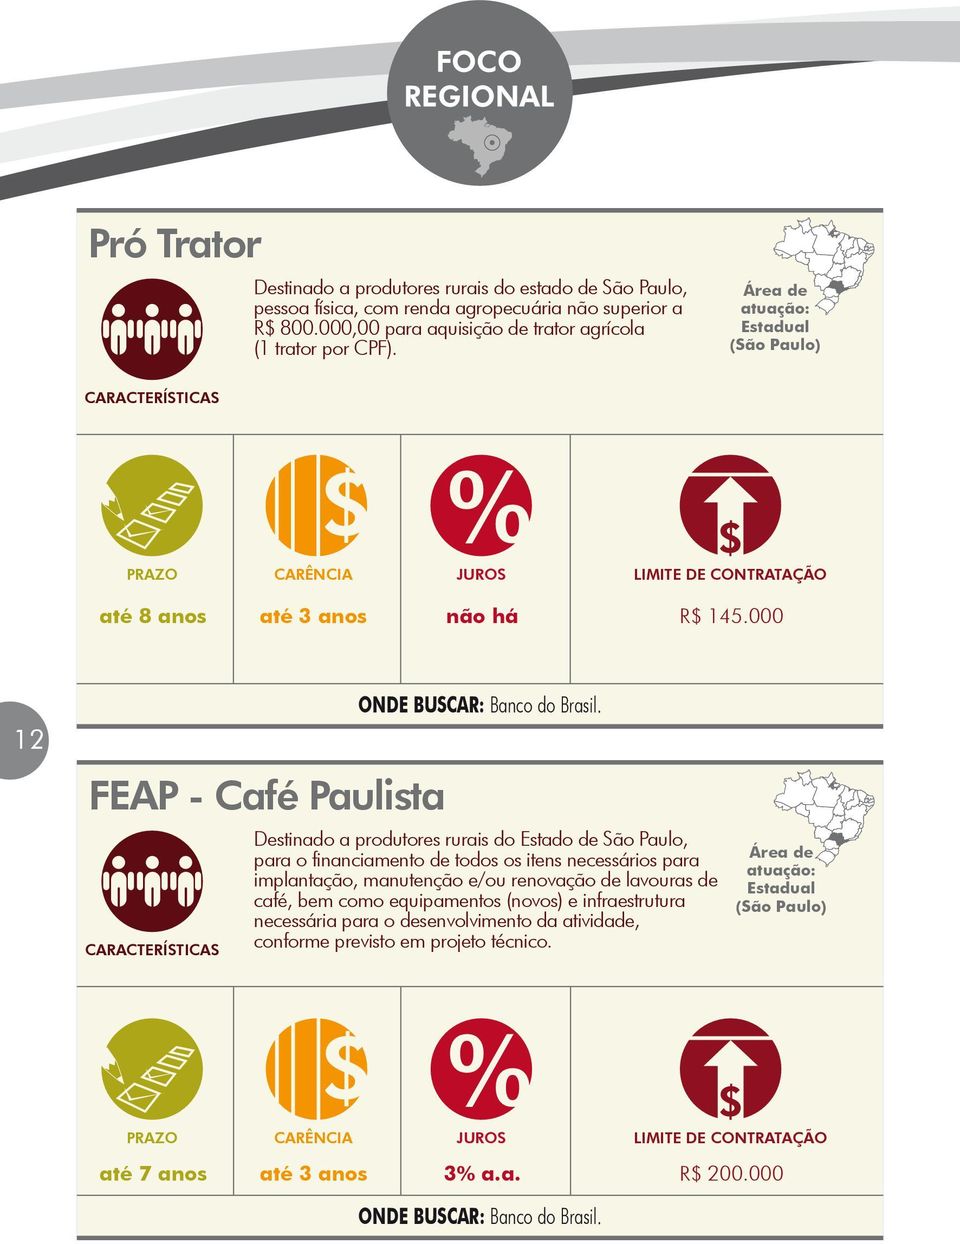 Destinado a produtores rurais do Estado de São Paulo, para o financiamento de todos os itens necessários para implantação, manutenção e/ou renovação de lavouras de café,